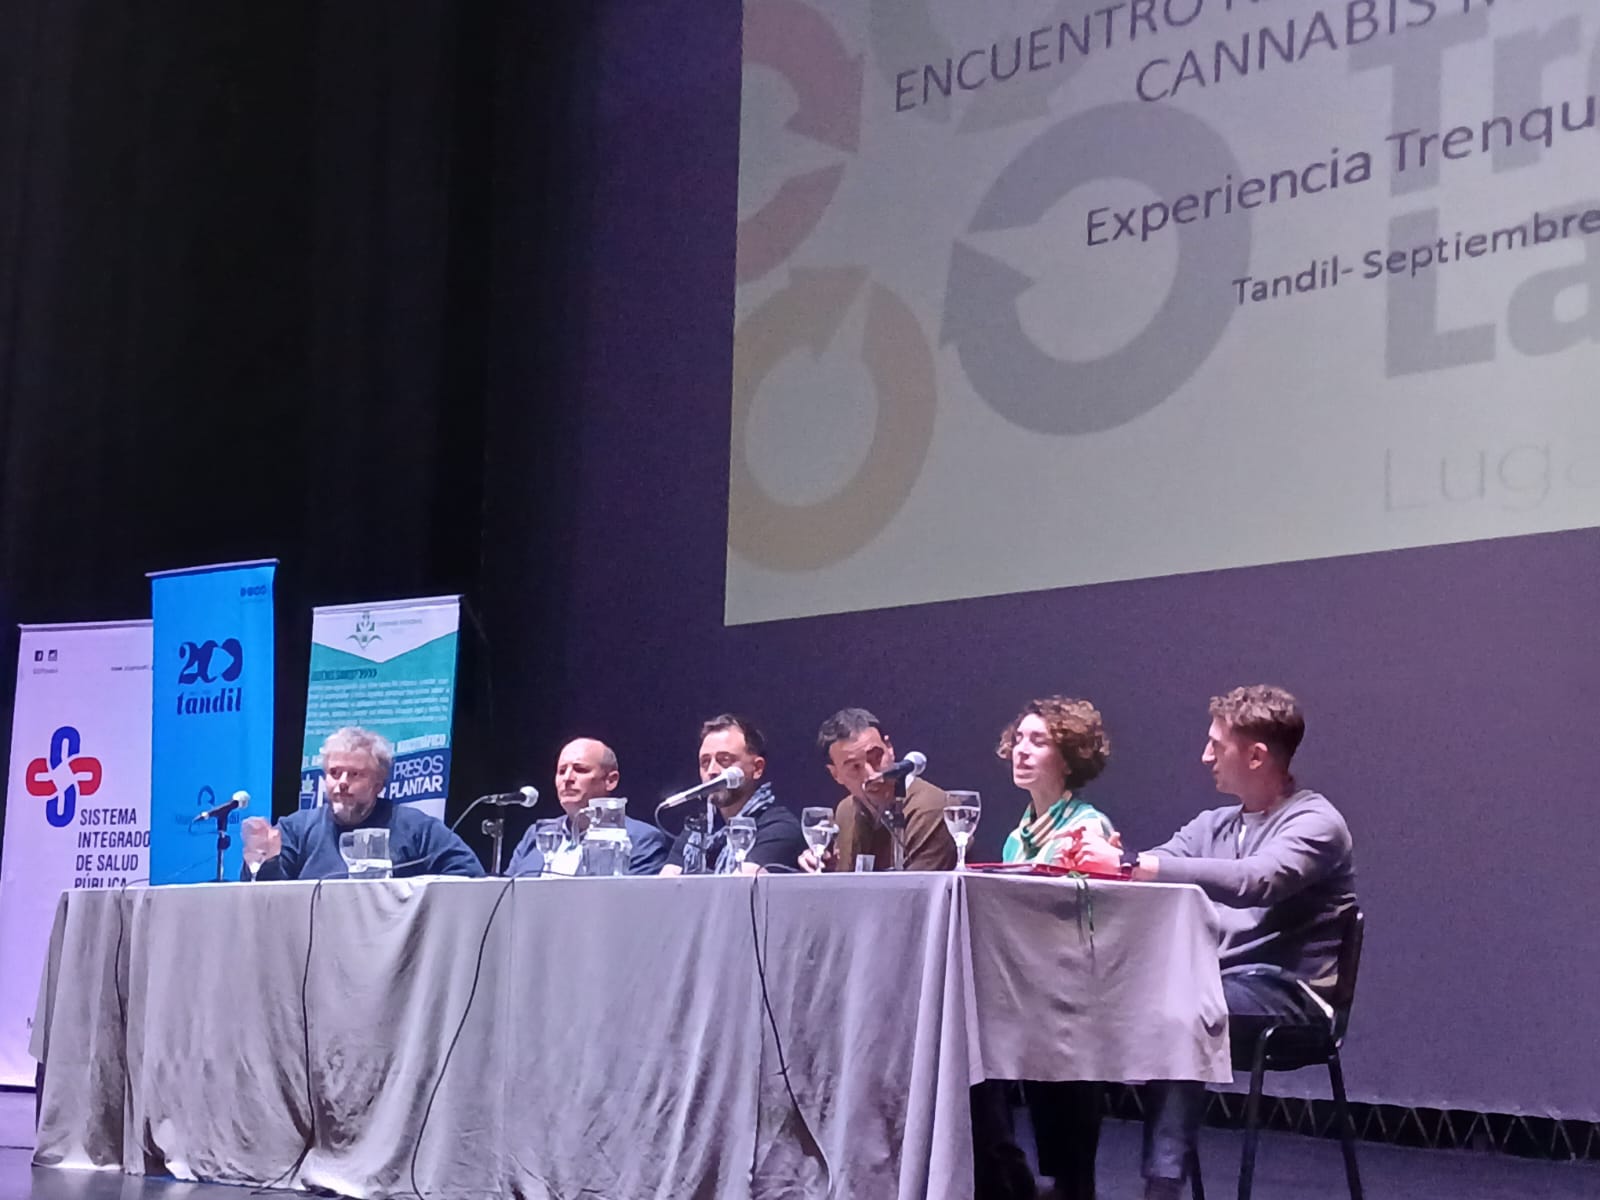 Presentaron la experiencia local del cannabis medicinal en un encuentro nacional